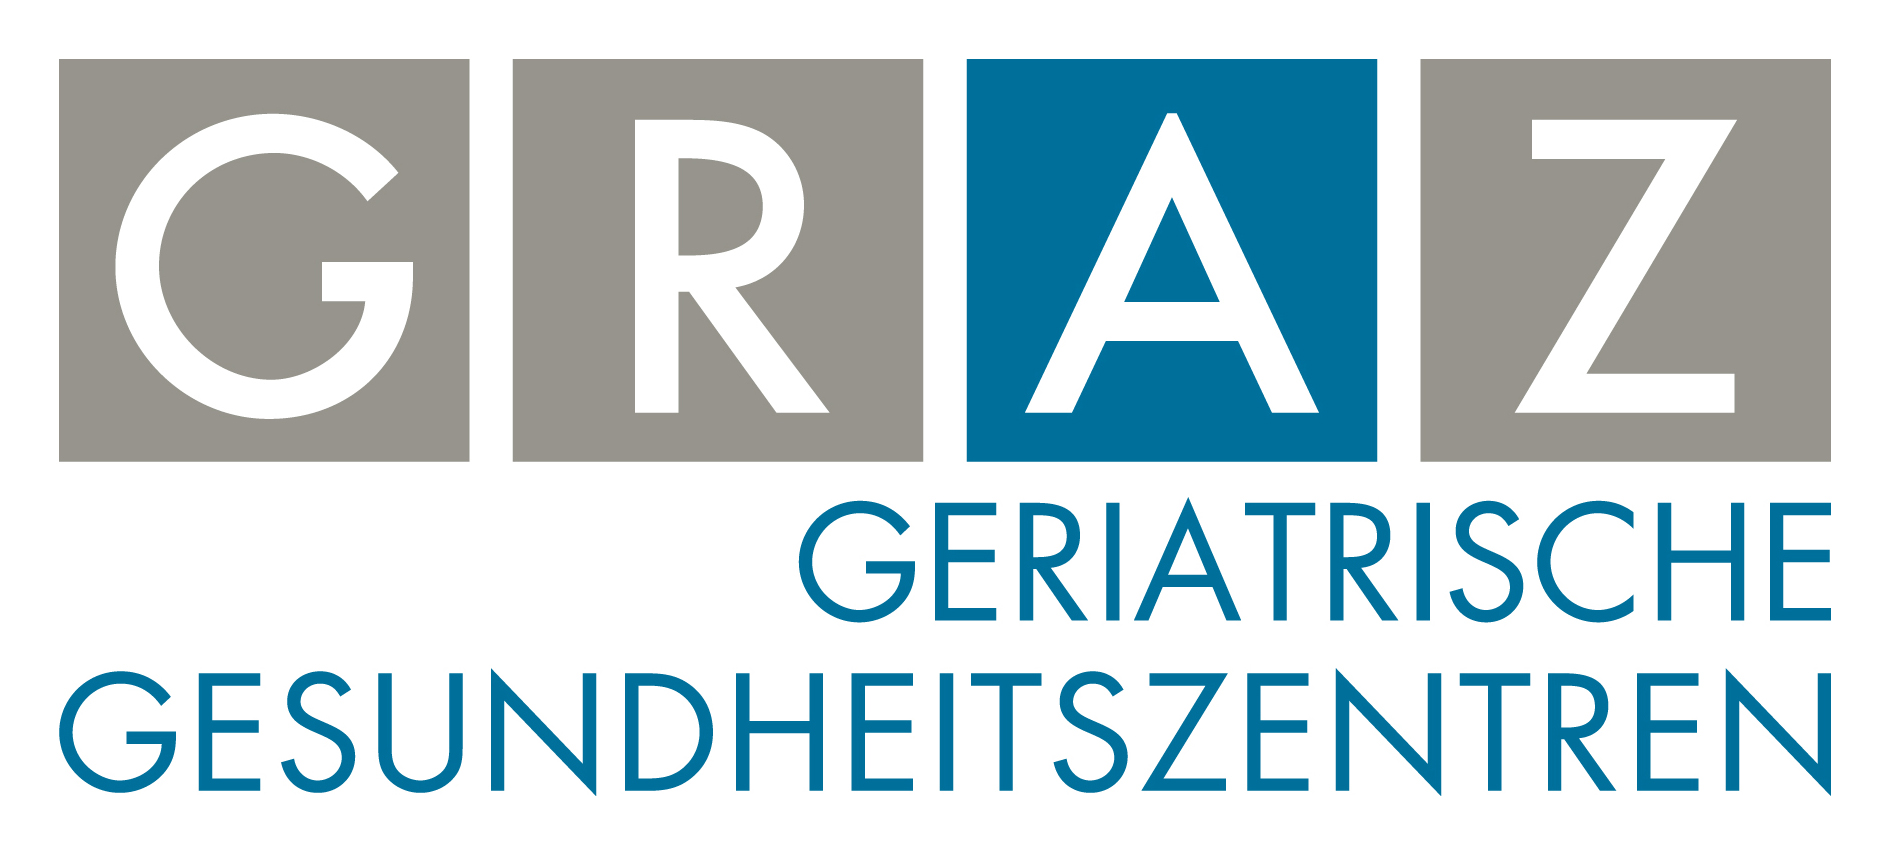 Centru de sănătate geriatrică - Graz